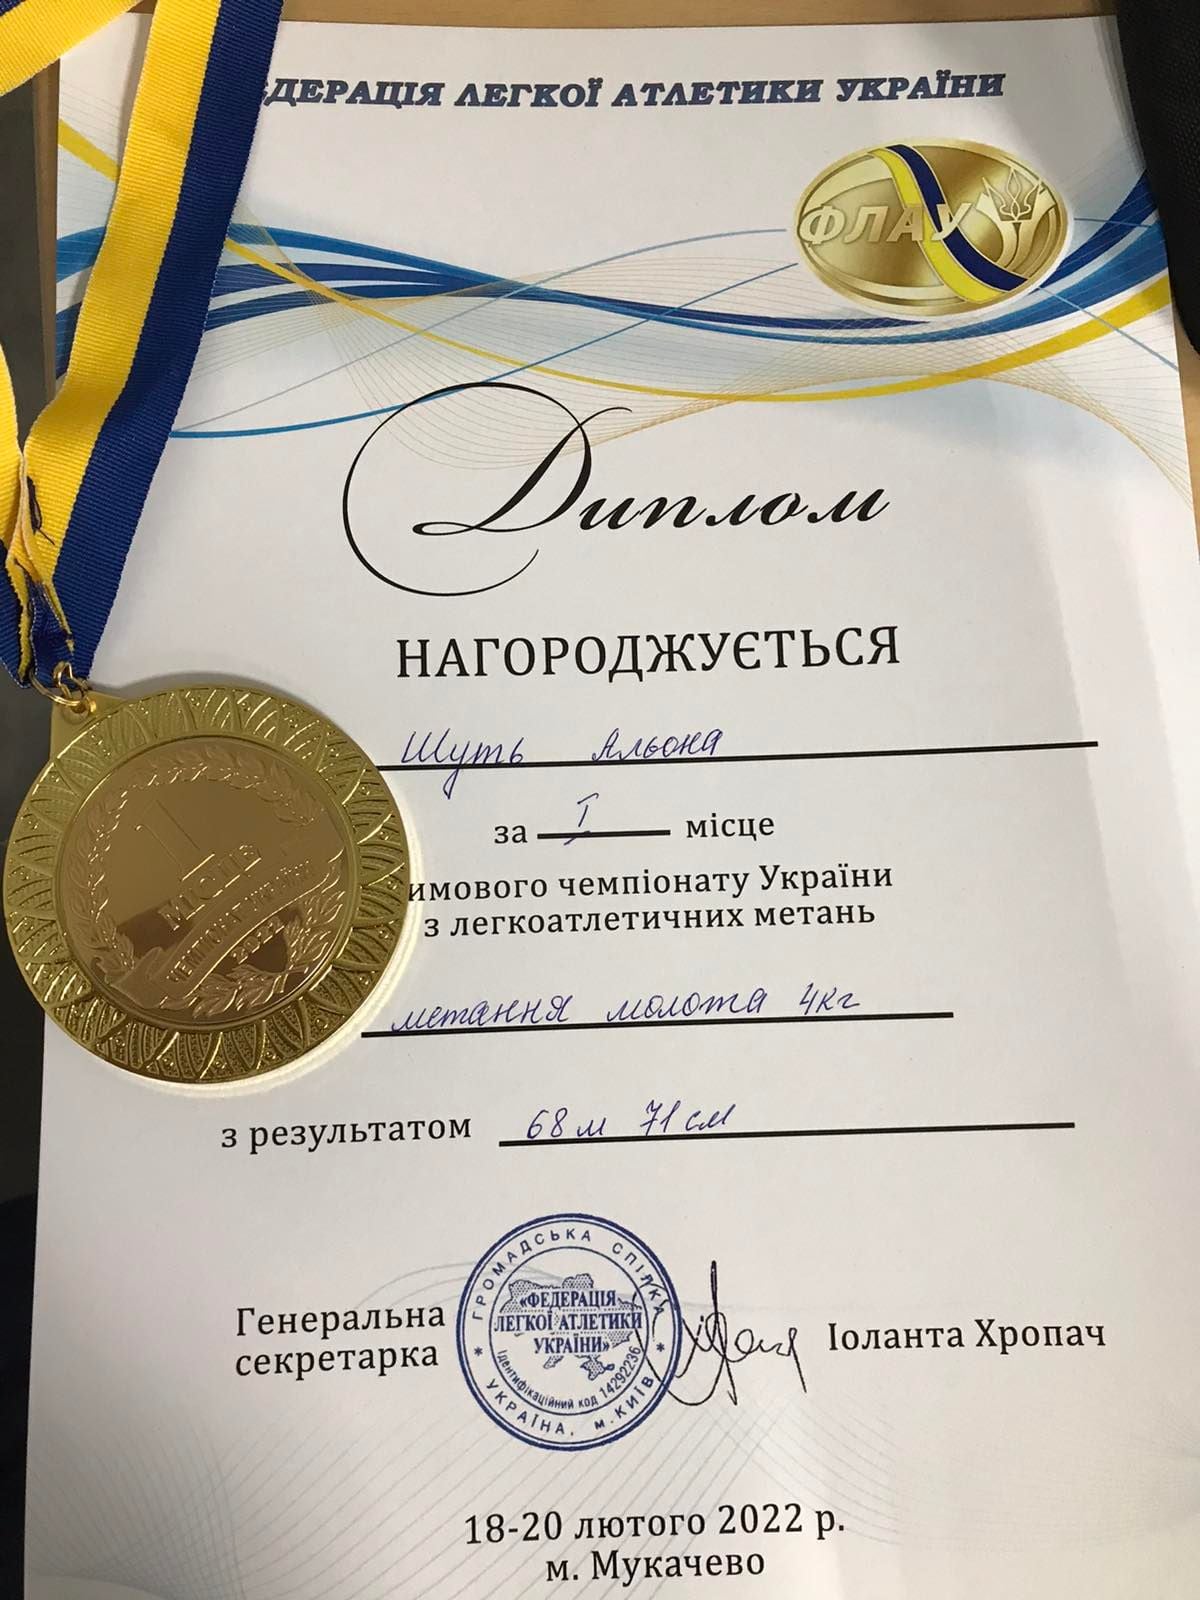 Спортсменка из Никополя завоевала золото на чемпионате Украины по легкоатлетическим метаниям